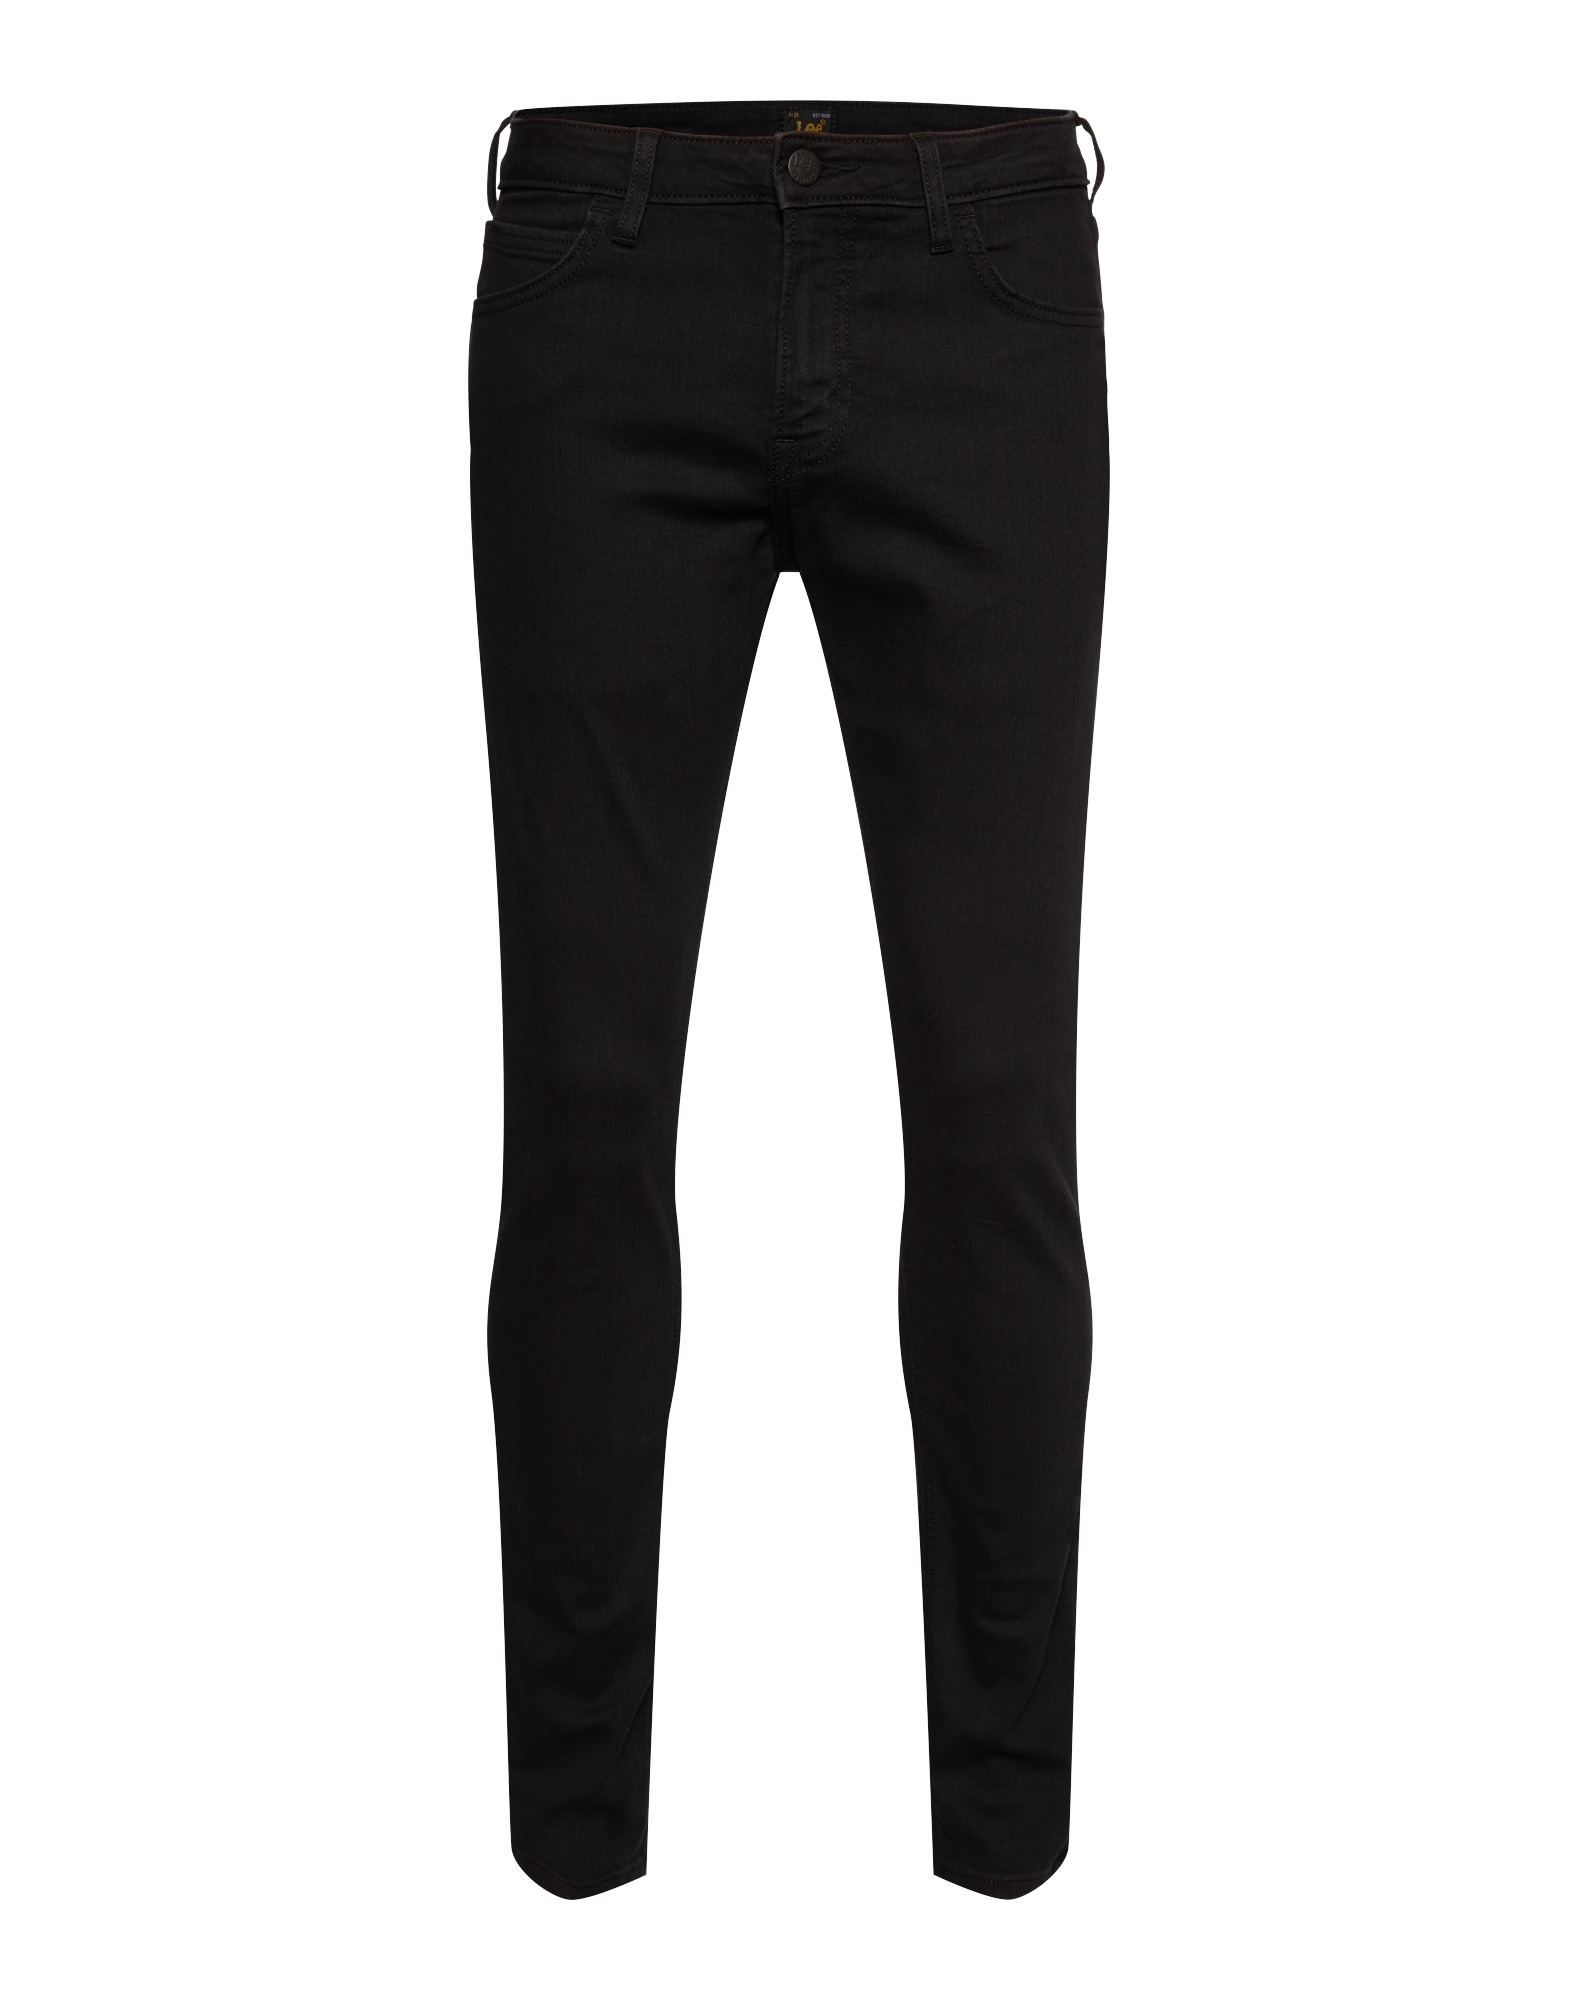 Lee Džinsai 'Malone' juodo džinso spalva